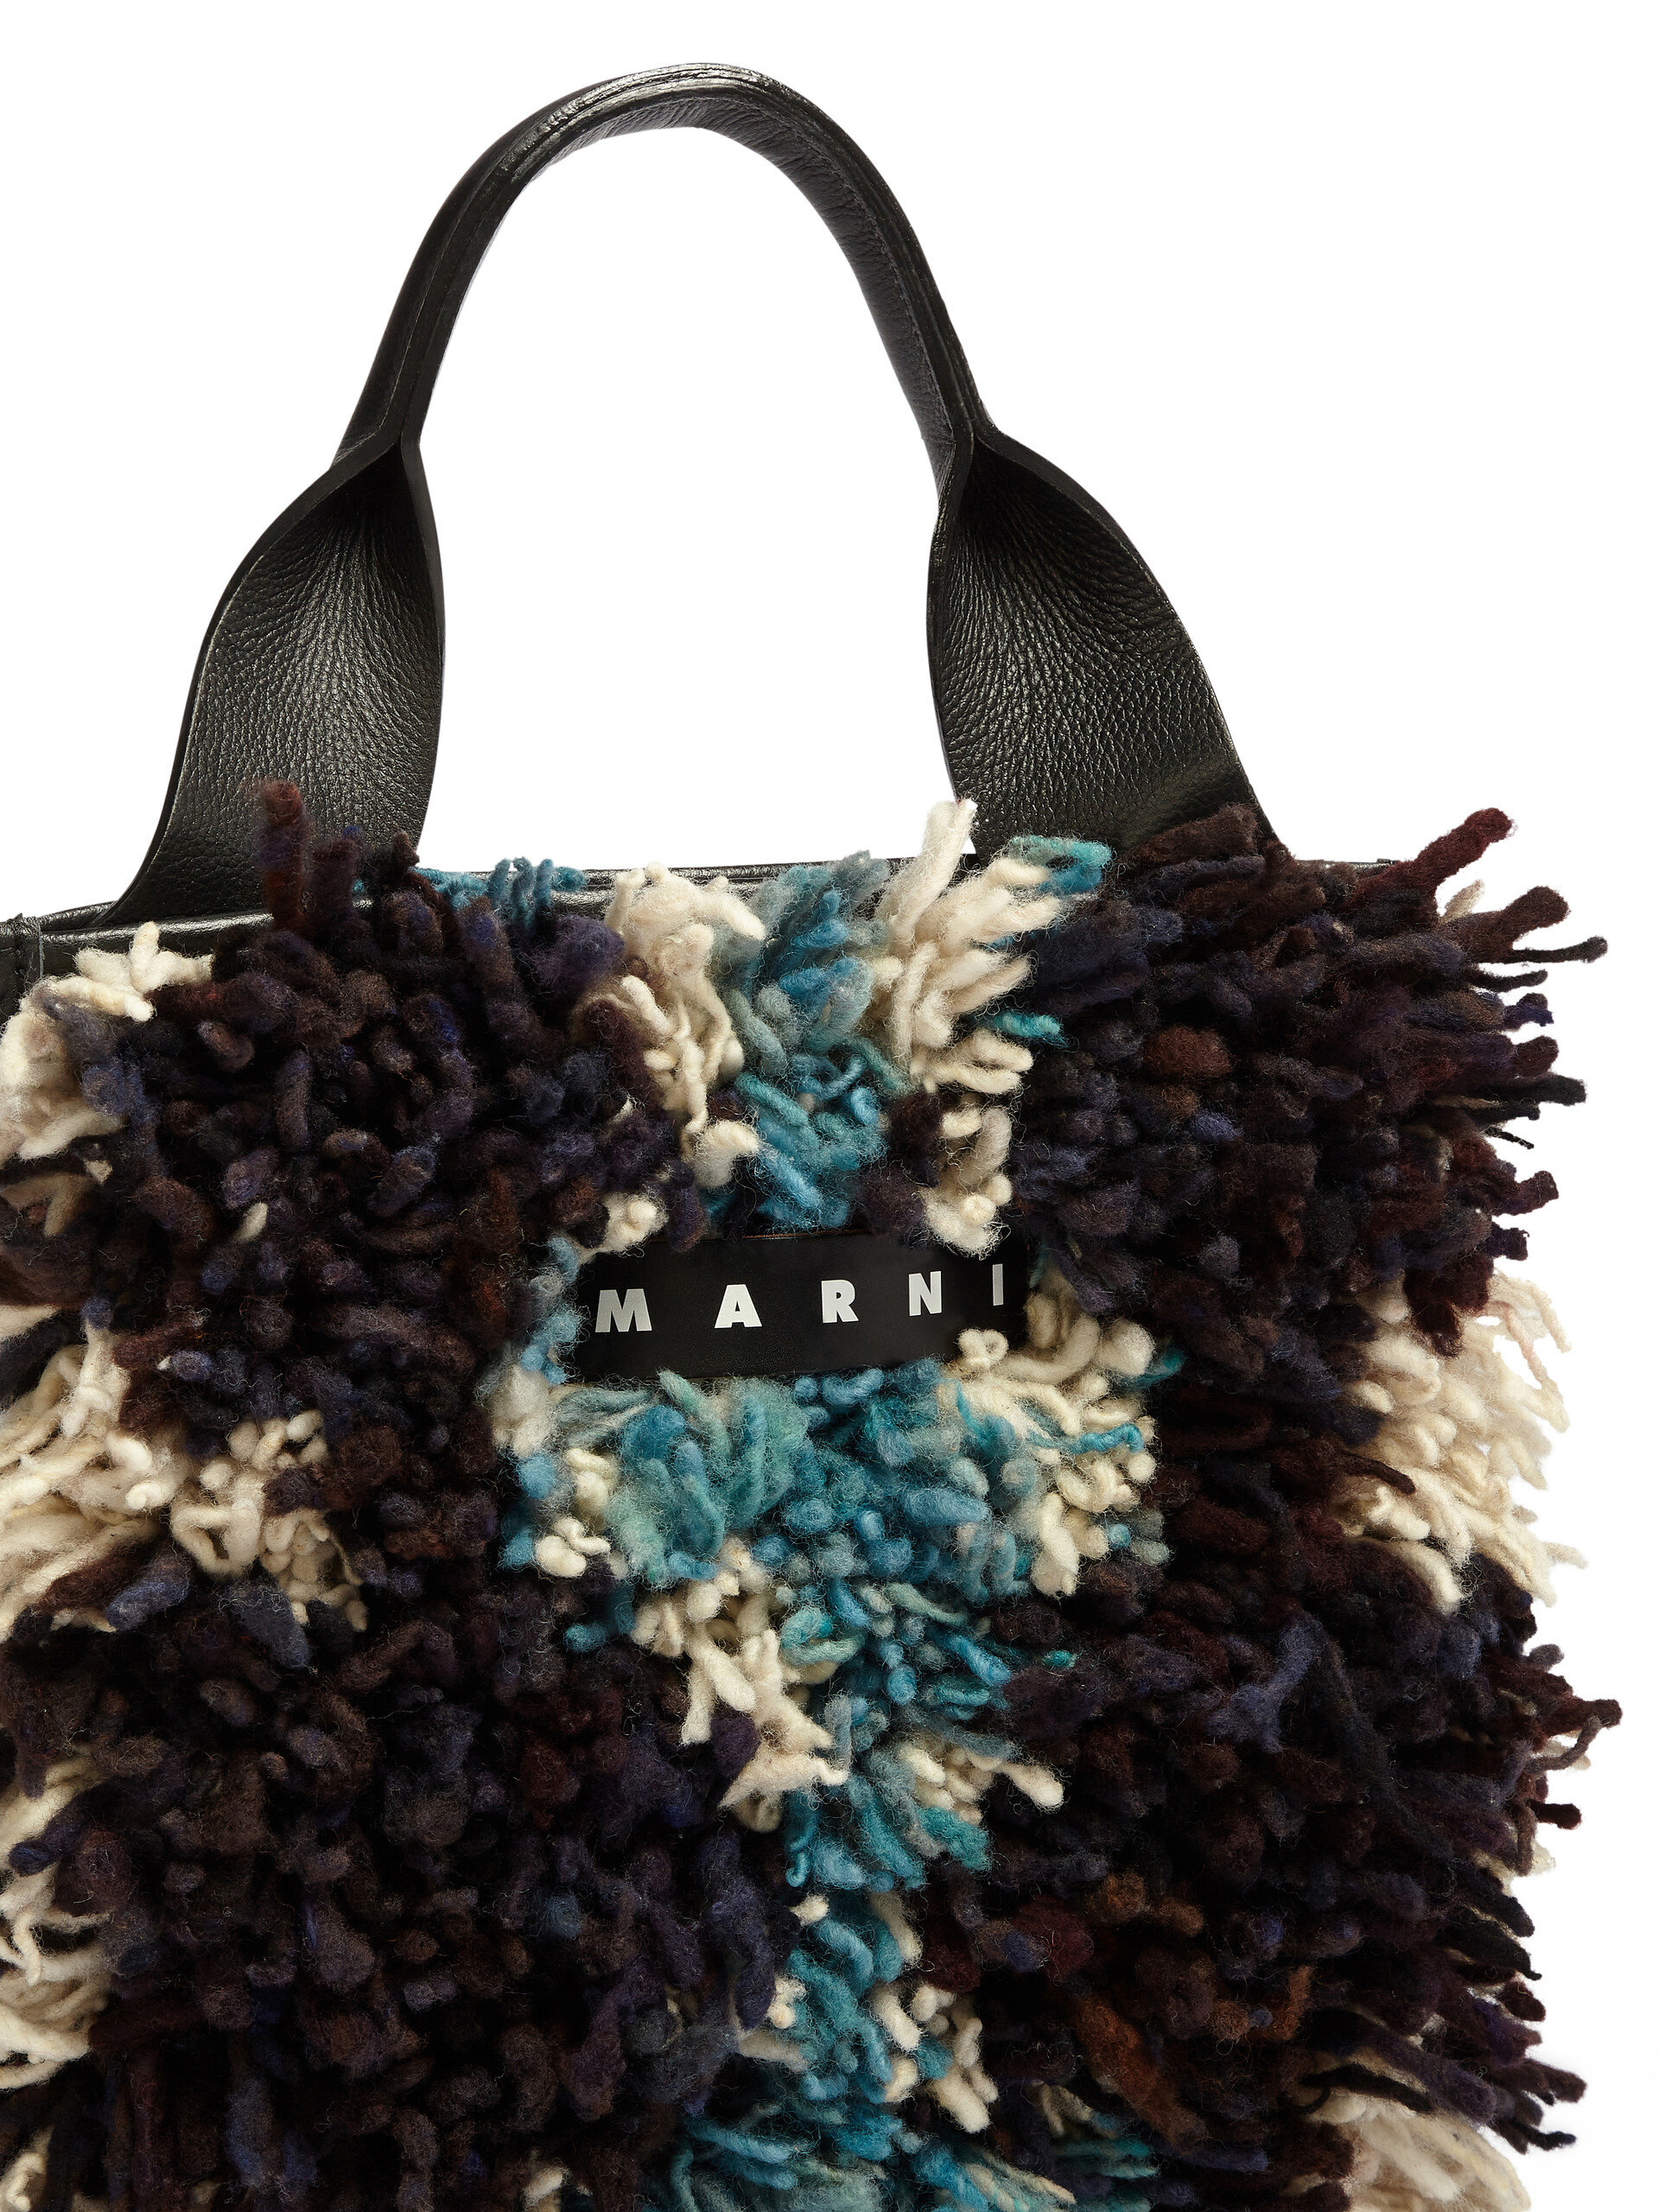 Shop MARNI MARNI MARKET Handbags by starrysky6